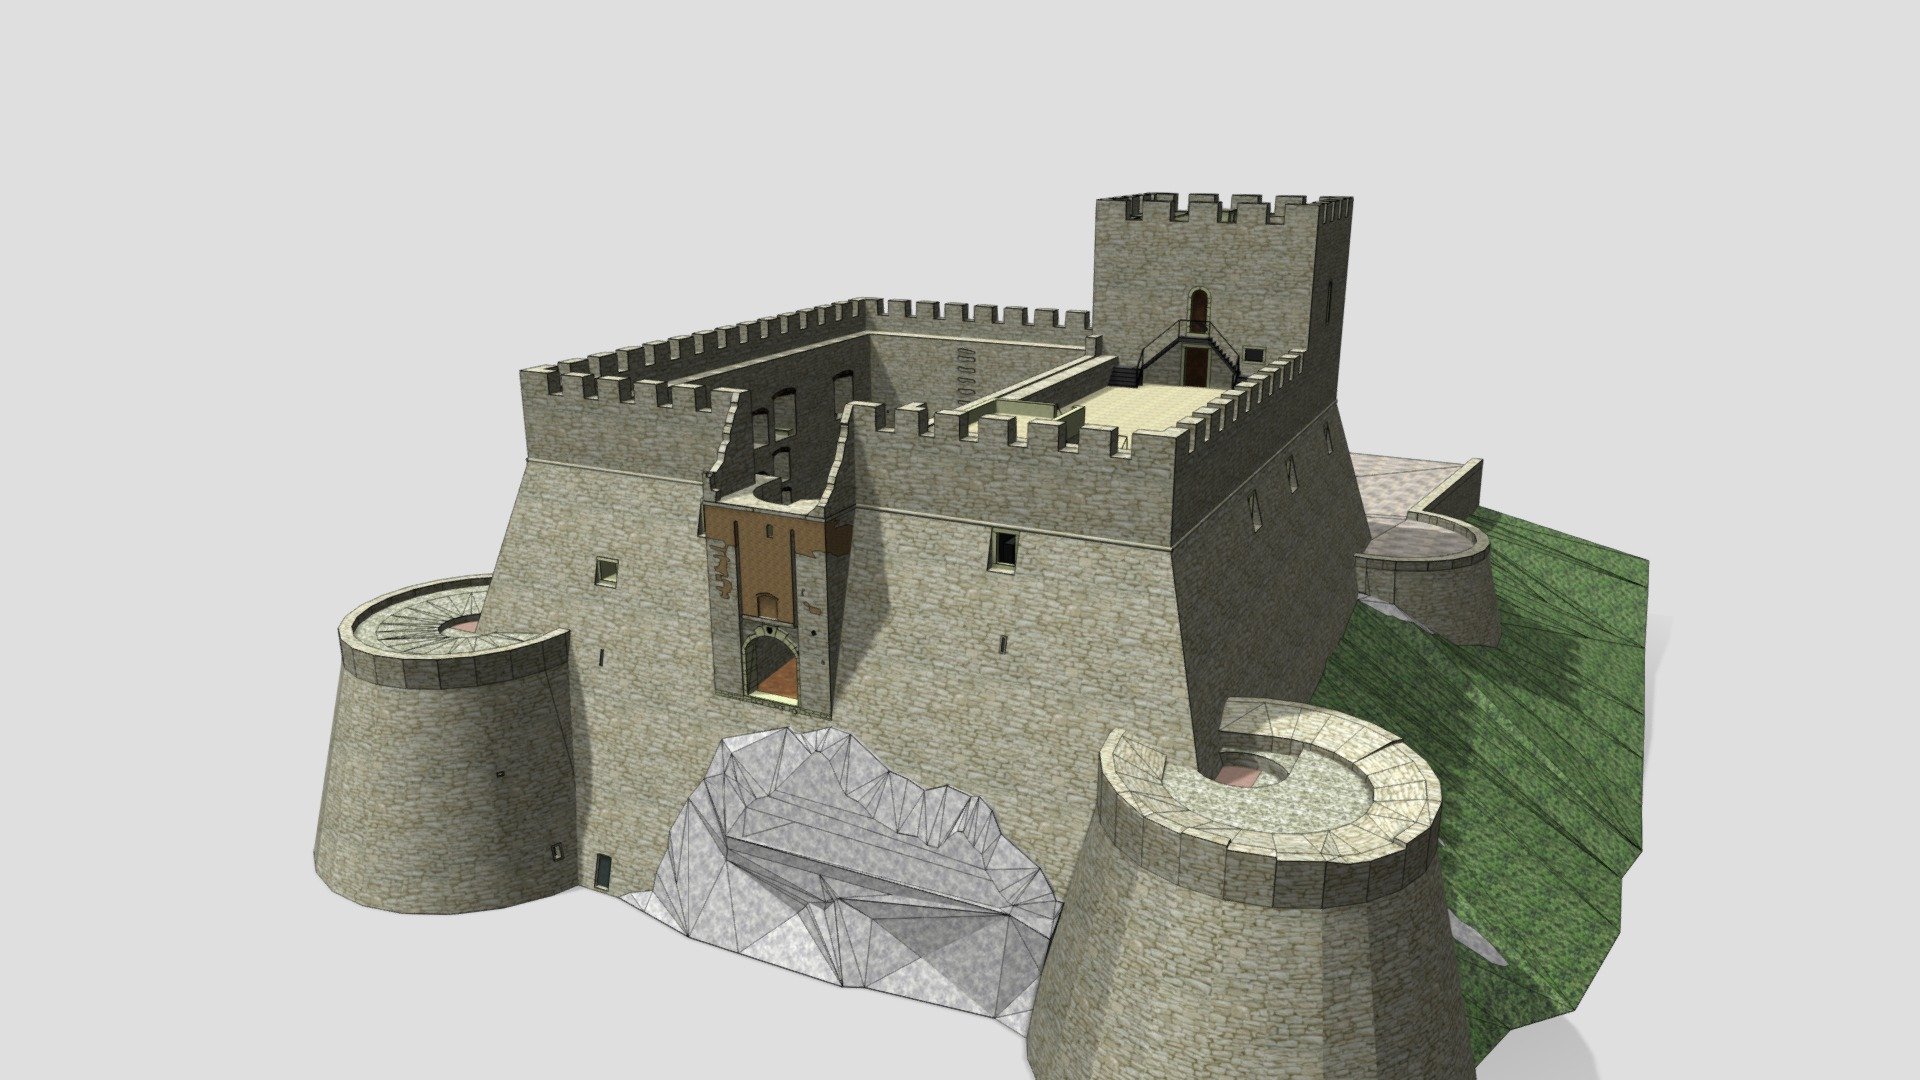 Modello 3D del Castello Monforte di Campobasso in Molise (Italia) - Castello Monforte di Campobasso - 3D model by GLP.Architecture 3d model